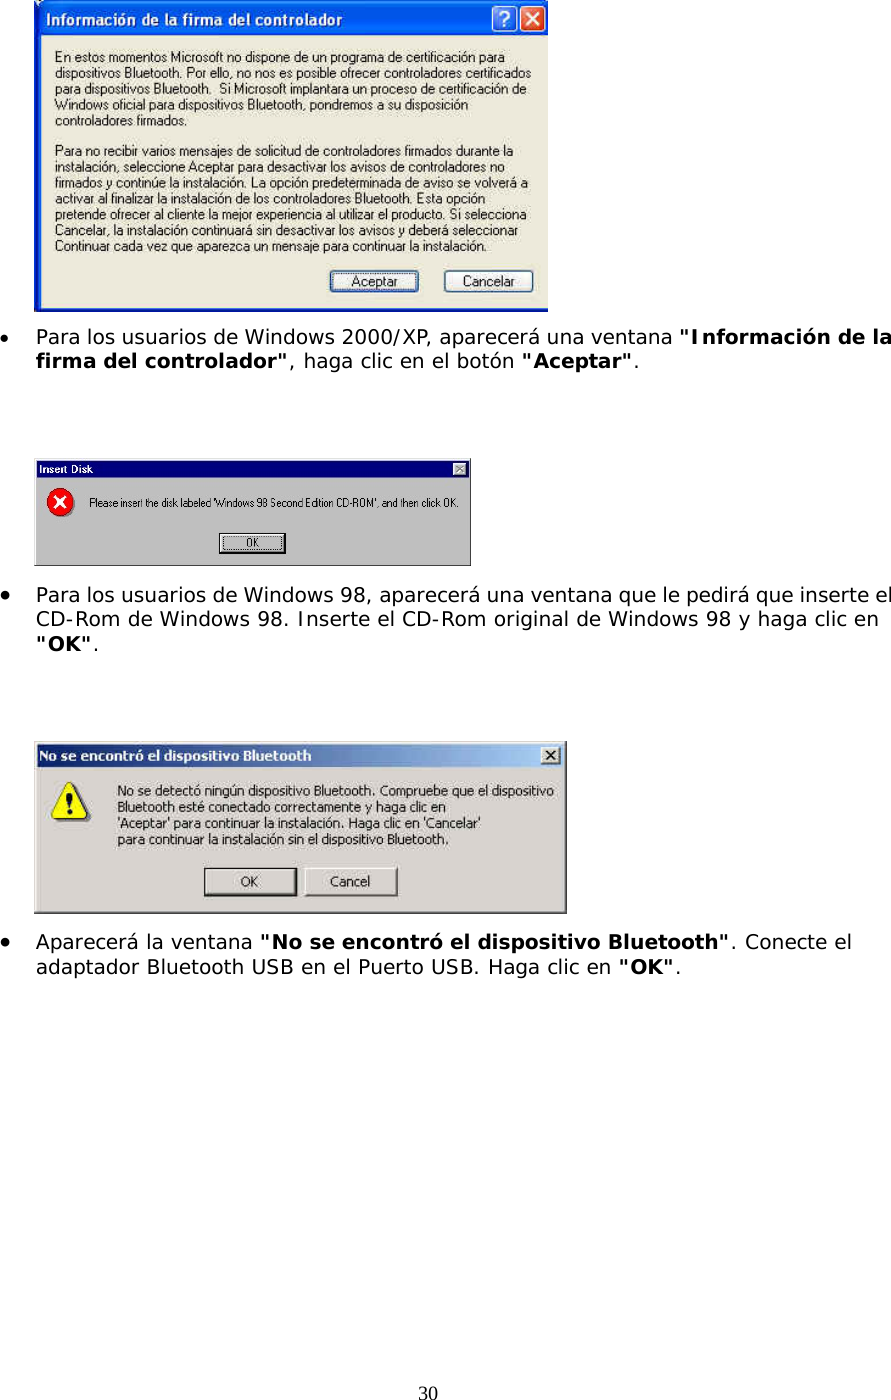 30  •  Para los usuarios de Windows 2000/XP, aparecerá una ventana &quot;Información de la firma del controlador&quot;, haga clic en el botón &quot;Aceptar&quot;.    •  Para los usuarios de Windows 98, aparecerá una ventana que le pedirá que inserte el CD-Rom de Windows 98. Inserte el CD-Rom original de Windows 98 y haga clic en &quot;OK&quot;.    •  Aparecerá la ventana &quot;No se encontró el dispositivo Bluetooth&quot;. Conecte el adaptador Bluetooth USB en el Puerto USB. Haga clic en &quot;OK&quot;. 